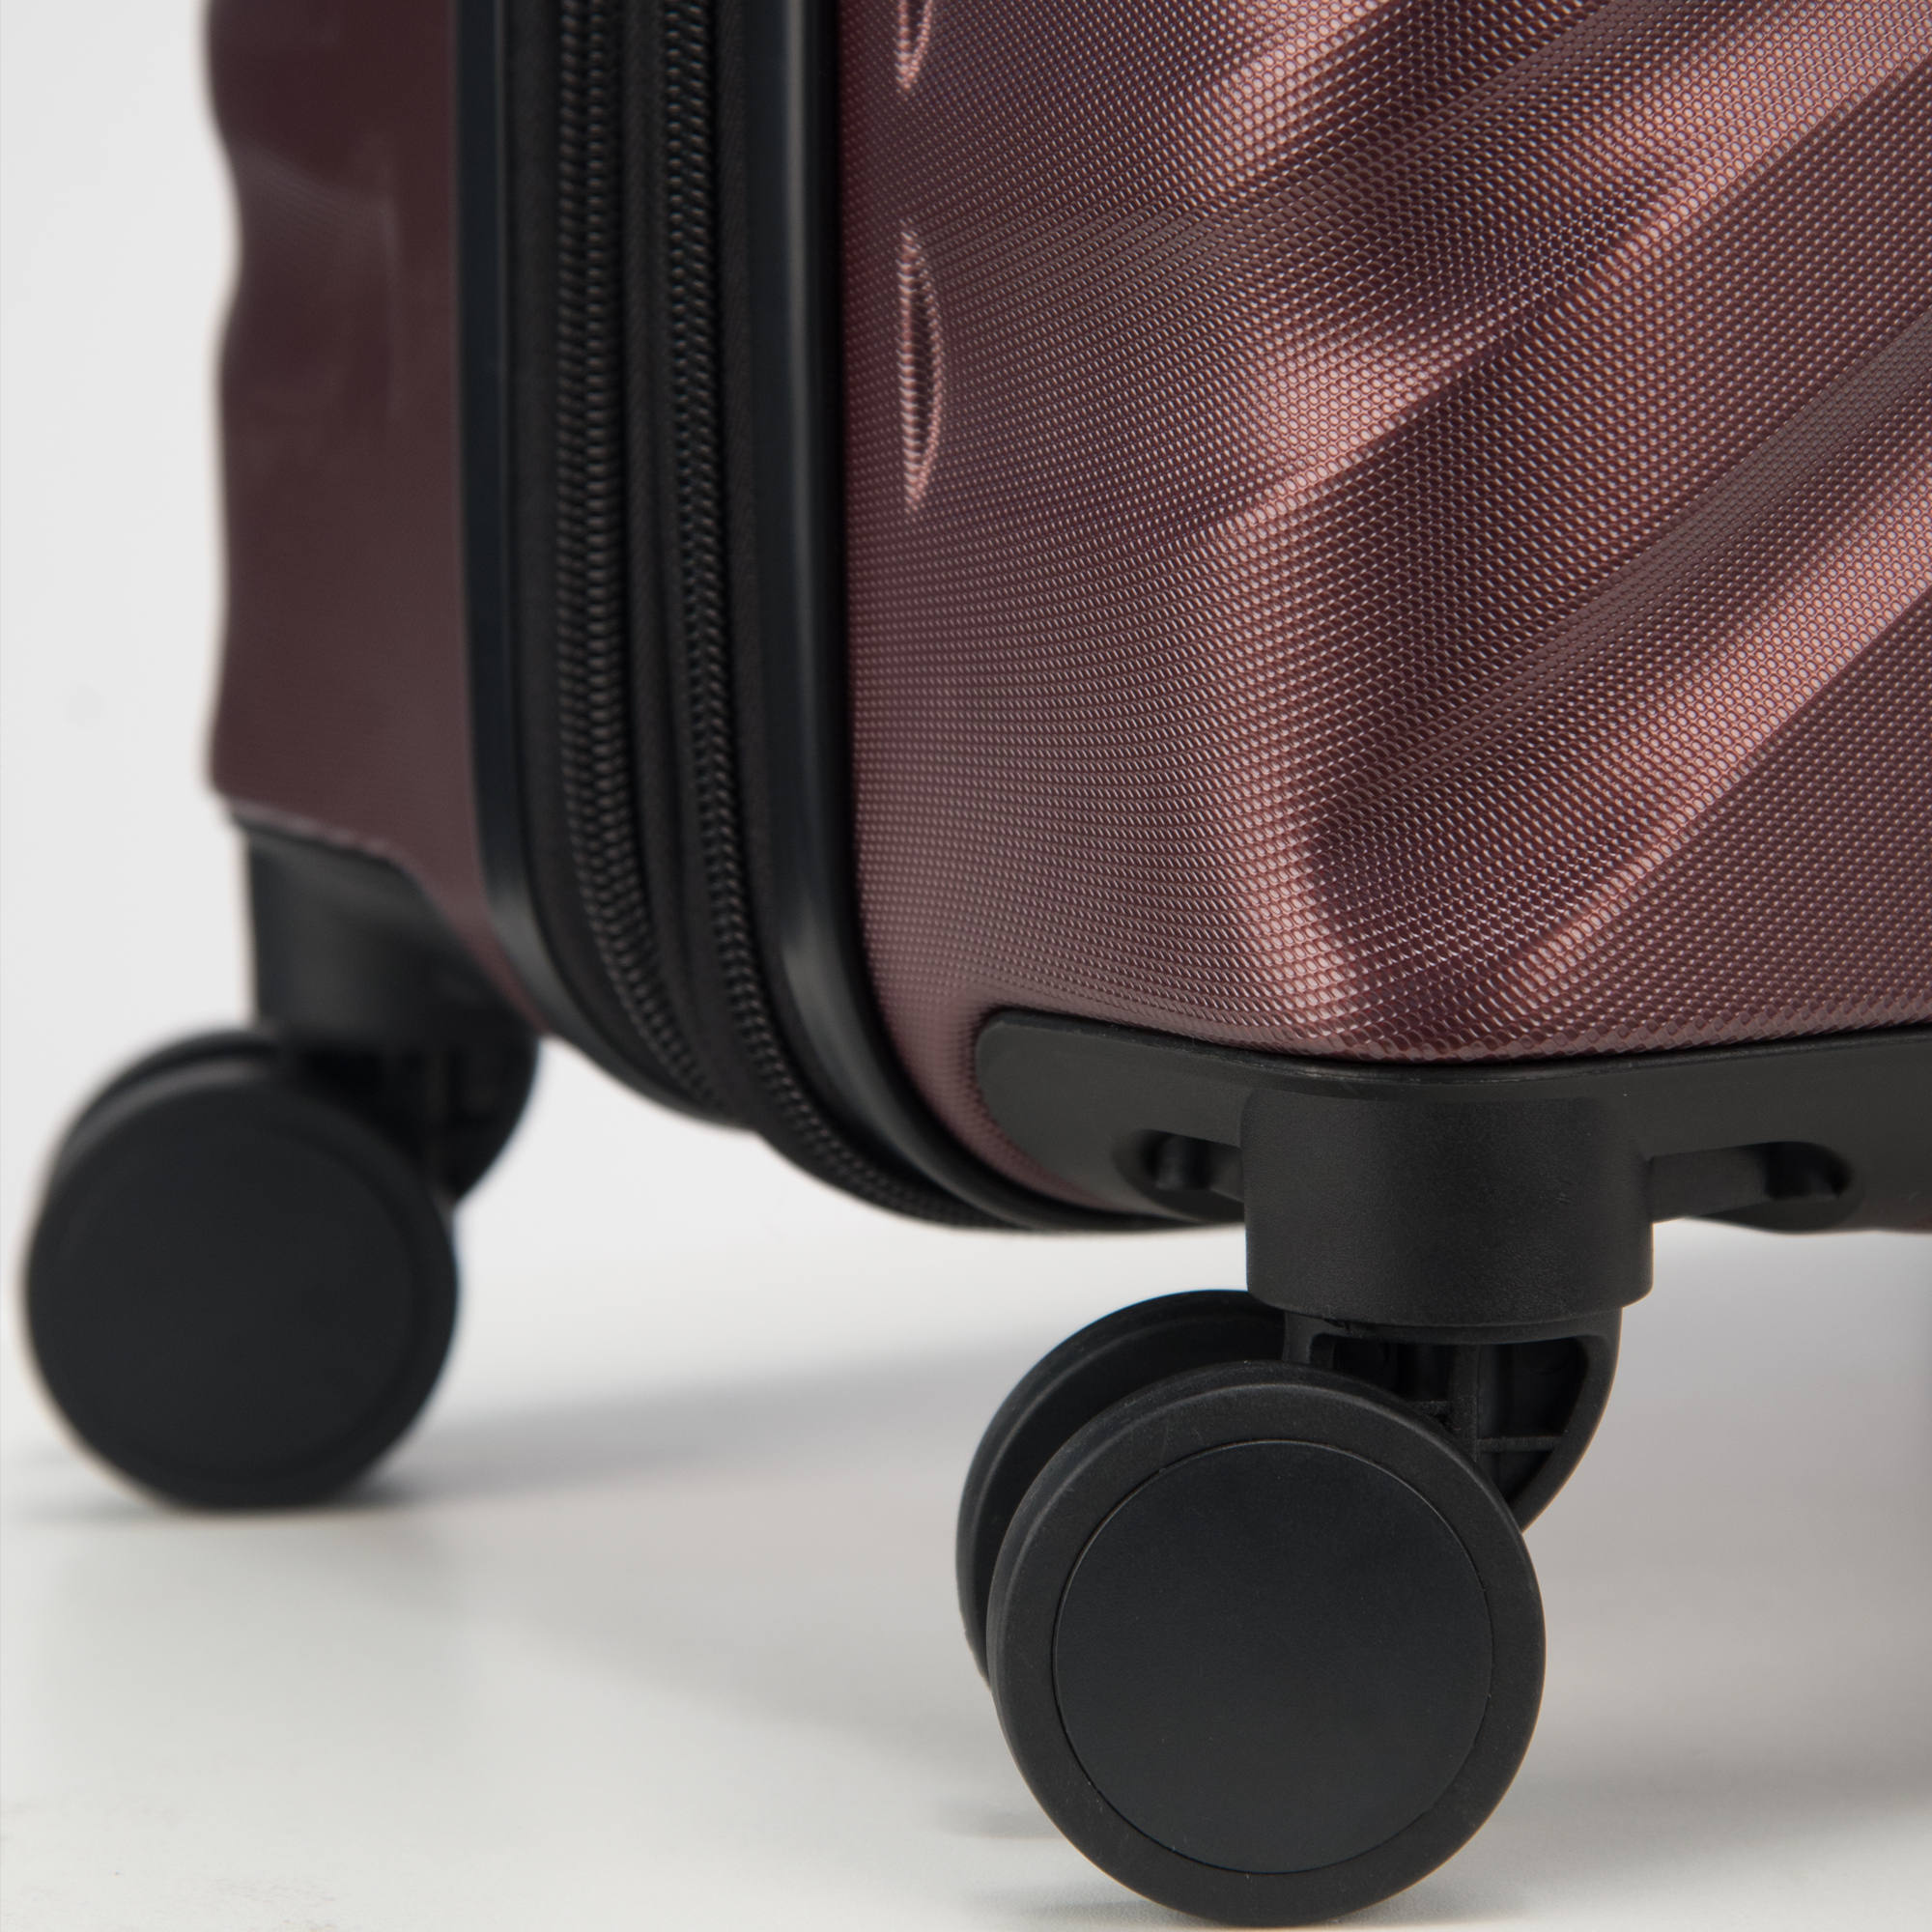 値頃 スーツケース キャリーバッグ ビジネスバッグ ビジネスリュック バッグ Delsey Paris Alexis Lightweight  Luggage Set Hardside Spinner Suitcase with TSA Lock Platinum Roseスーツケース 